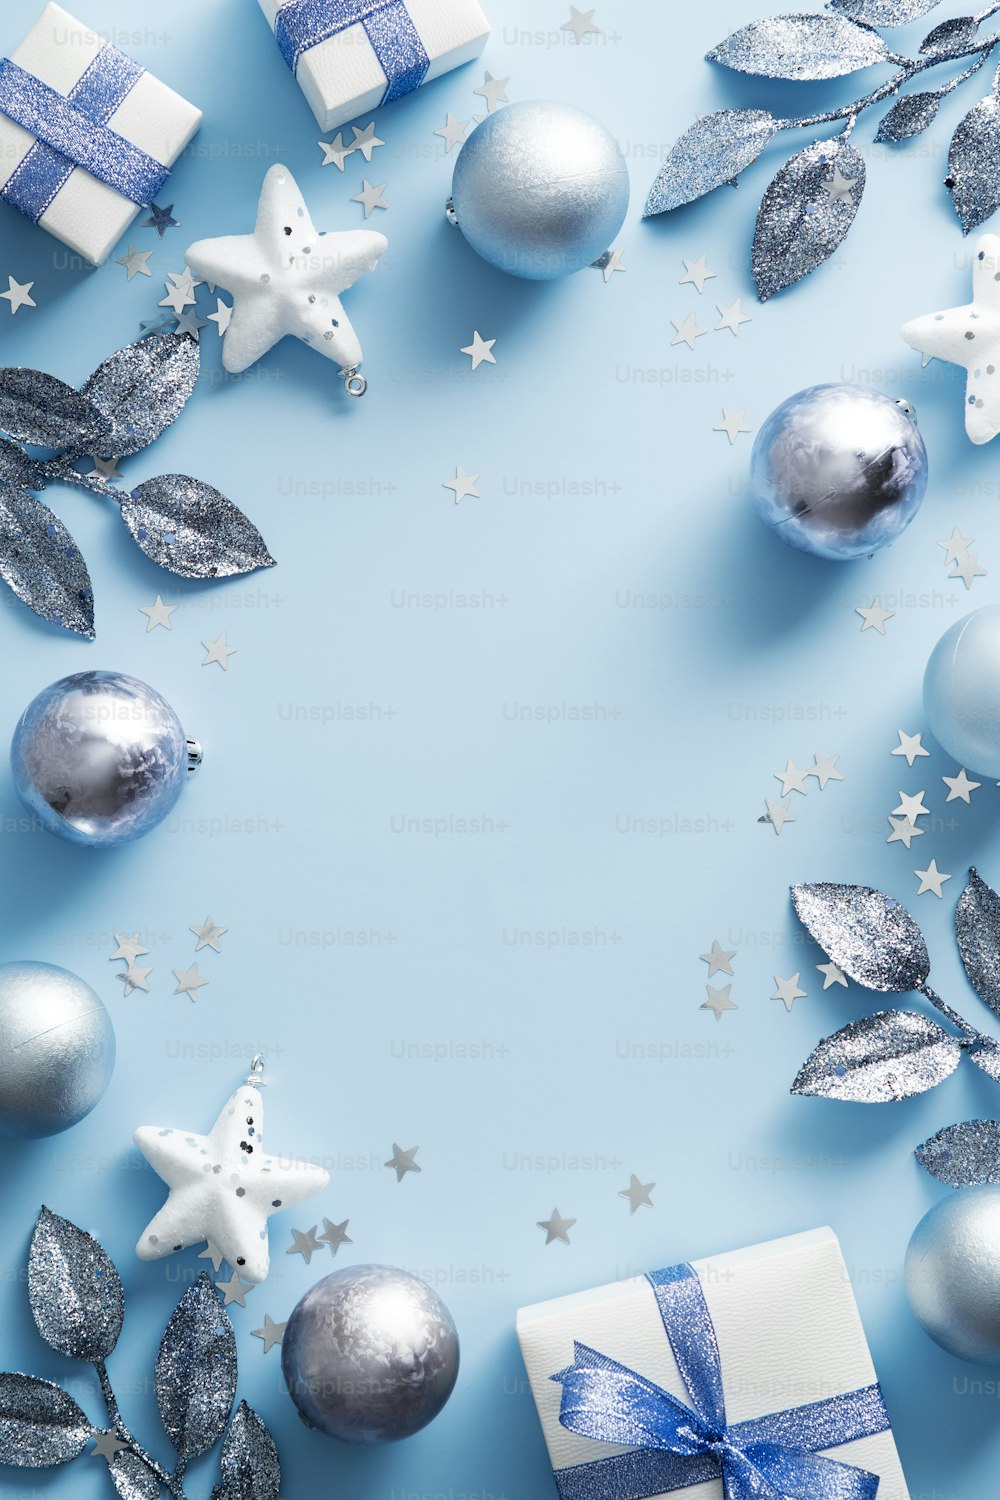 Diseño de banner vertical de Feliz Navidad. Adornos navideños plateados y blancos sobre fondo azul. Maqueta moderna de póster de Navidad.